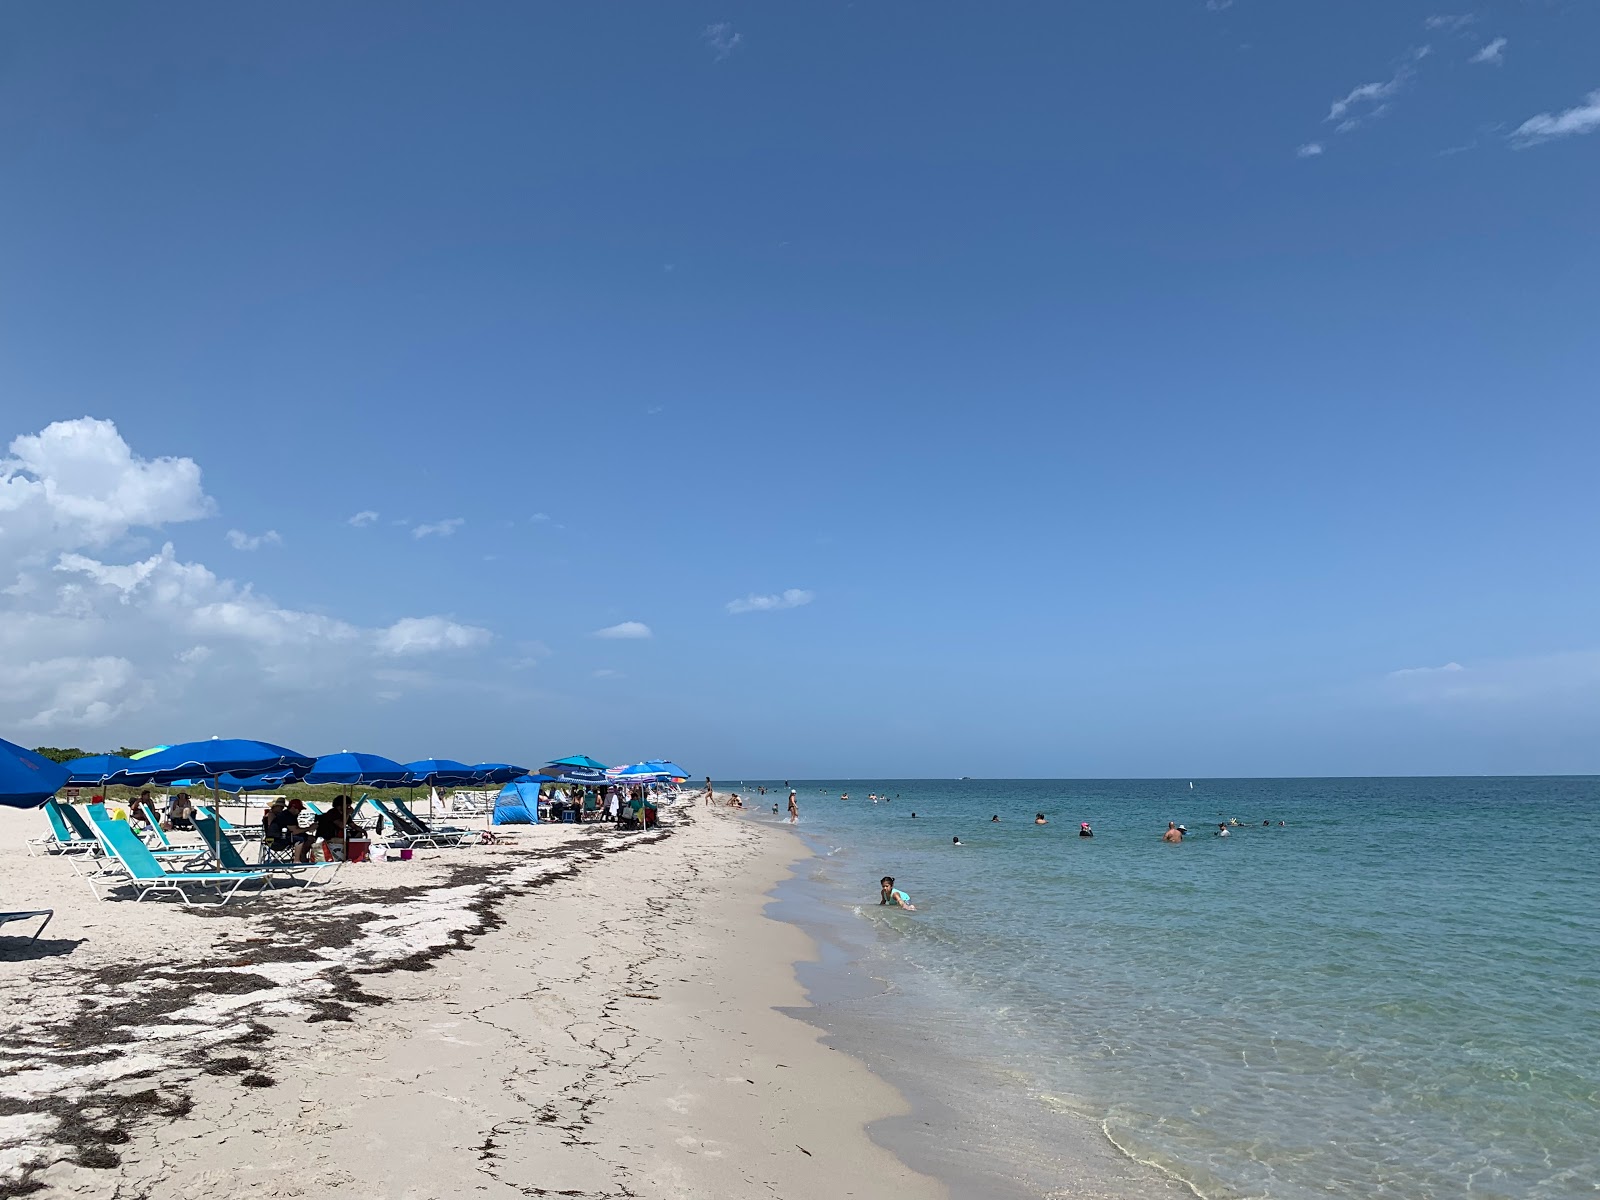 Cape Florida beach'in fotoğrafı parlak kum yüzey ile